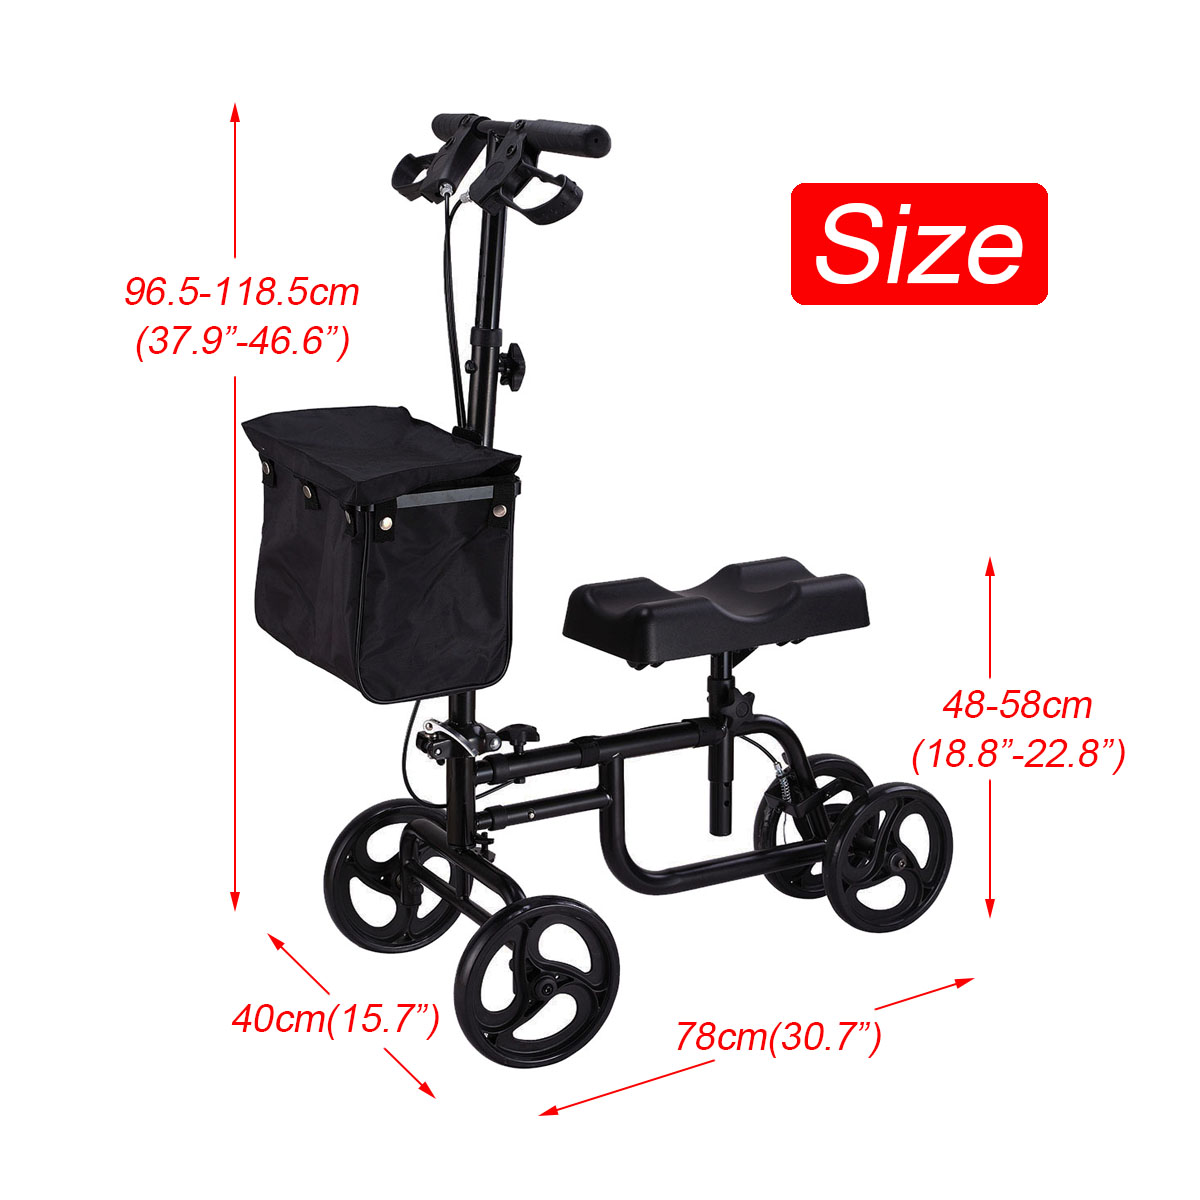 Mobility-Knee-Walker-Scooter-Roller-Crutch-Leg-Steerable-Foldable-Design-Adjustable-Height-Adjustabl-1940054-5